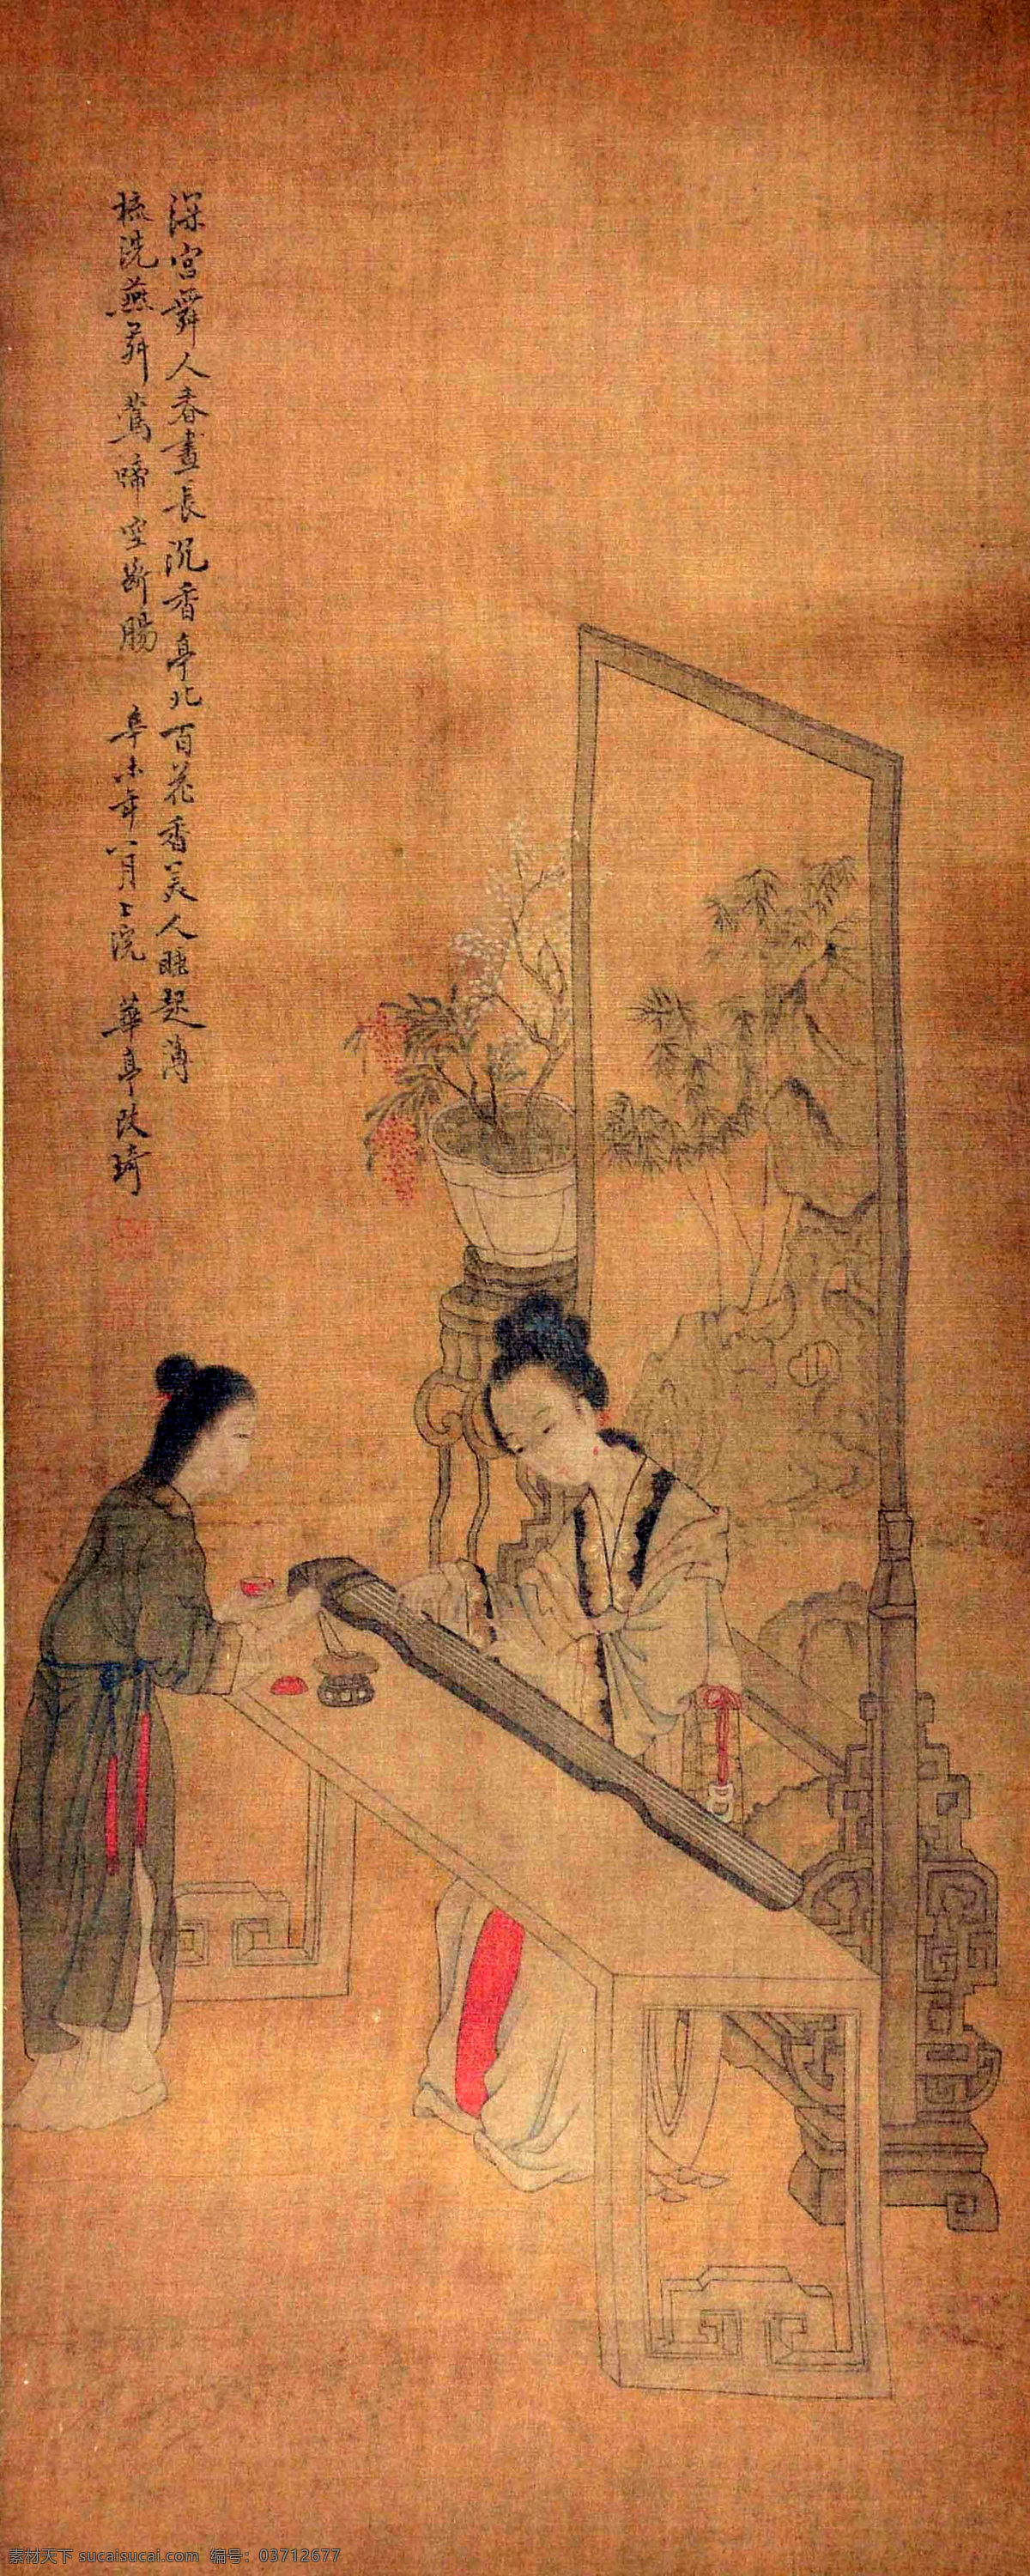 改琦 抚琴图 国画 中国画 传统画 名家 绘画 艺术 文化艺术 绘画书法